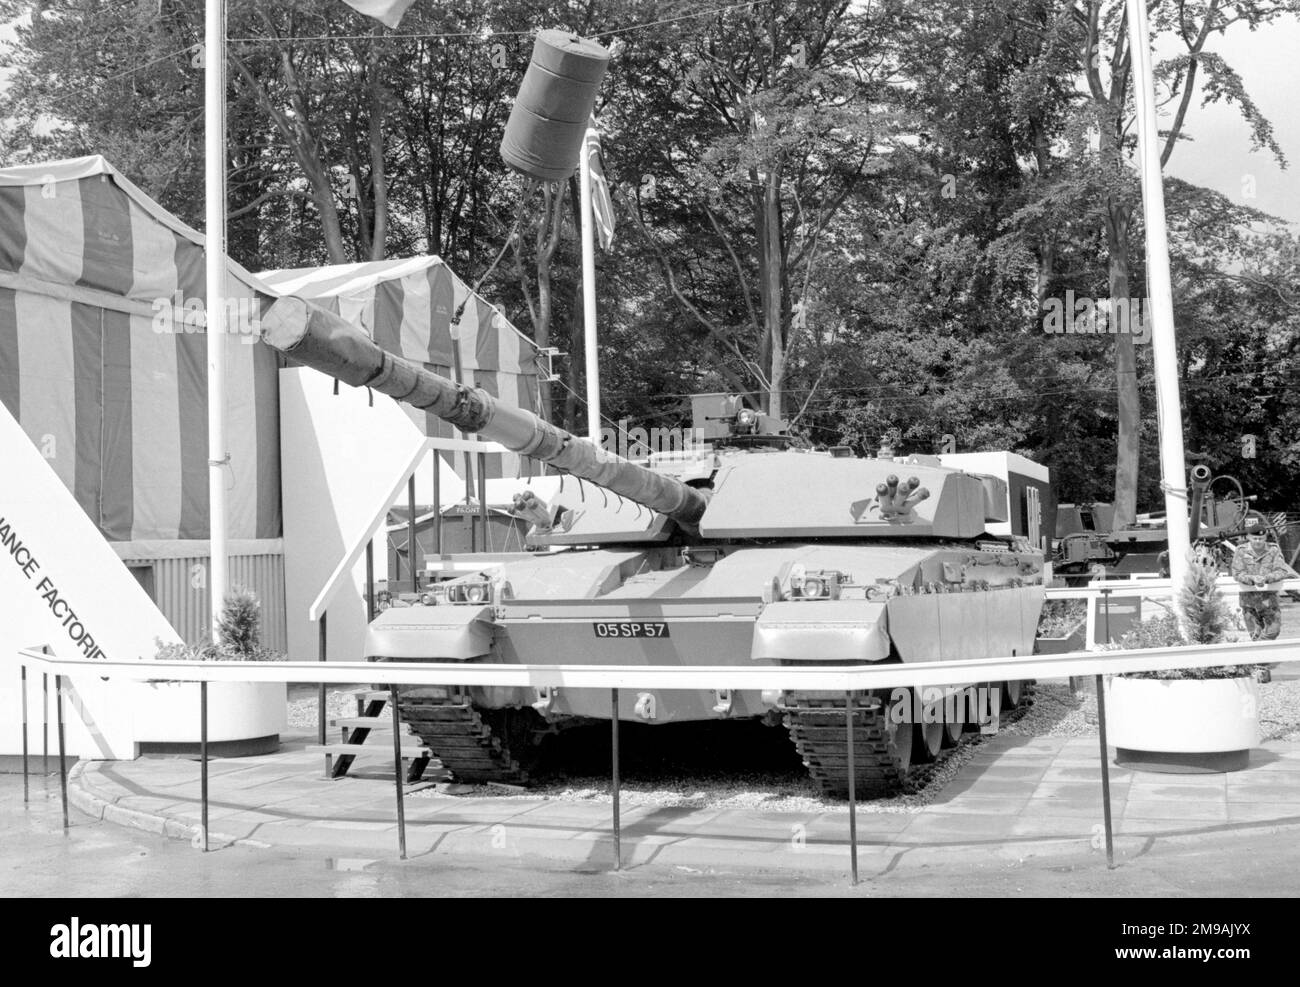 Un modèle de réservoir Challenger 1 avec tourelle et équipement modifiés, au British Army Equipment Exhibition, qui s'est tenu à Aldershot du 23-27 juin 1980. Banque D'Images